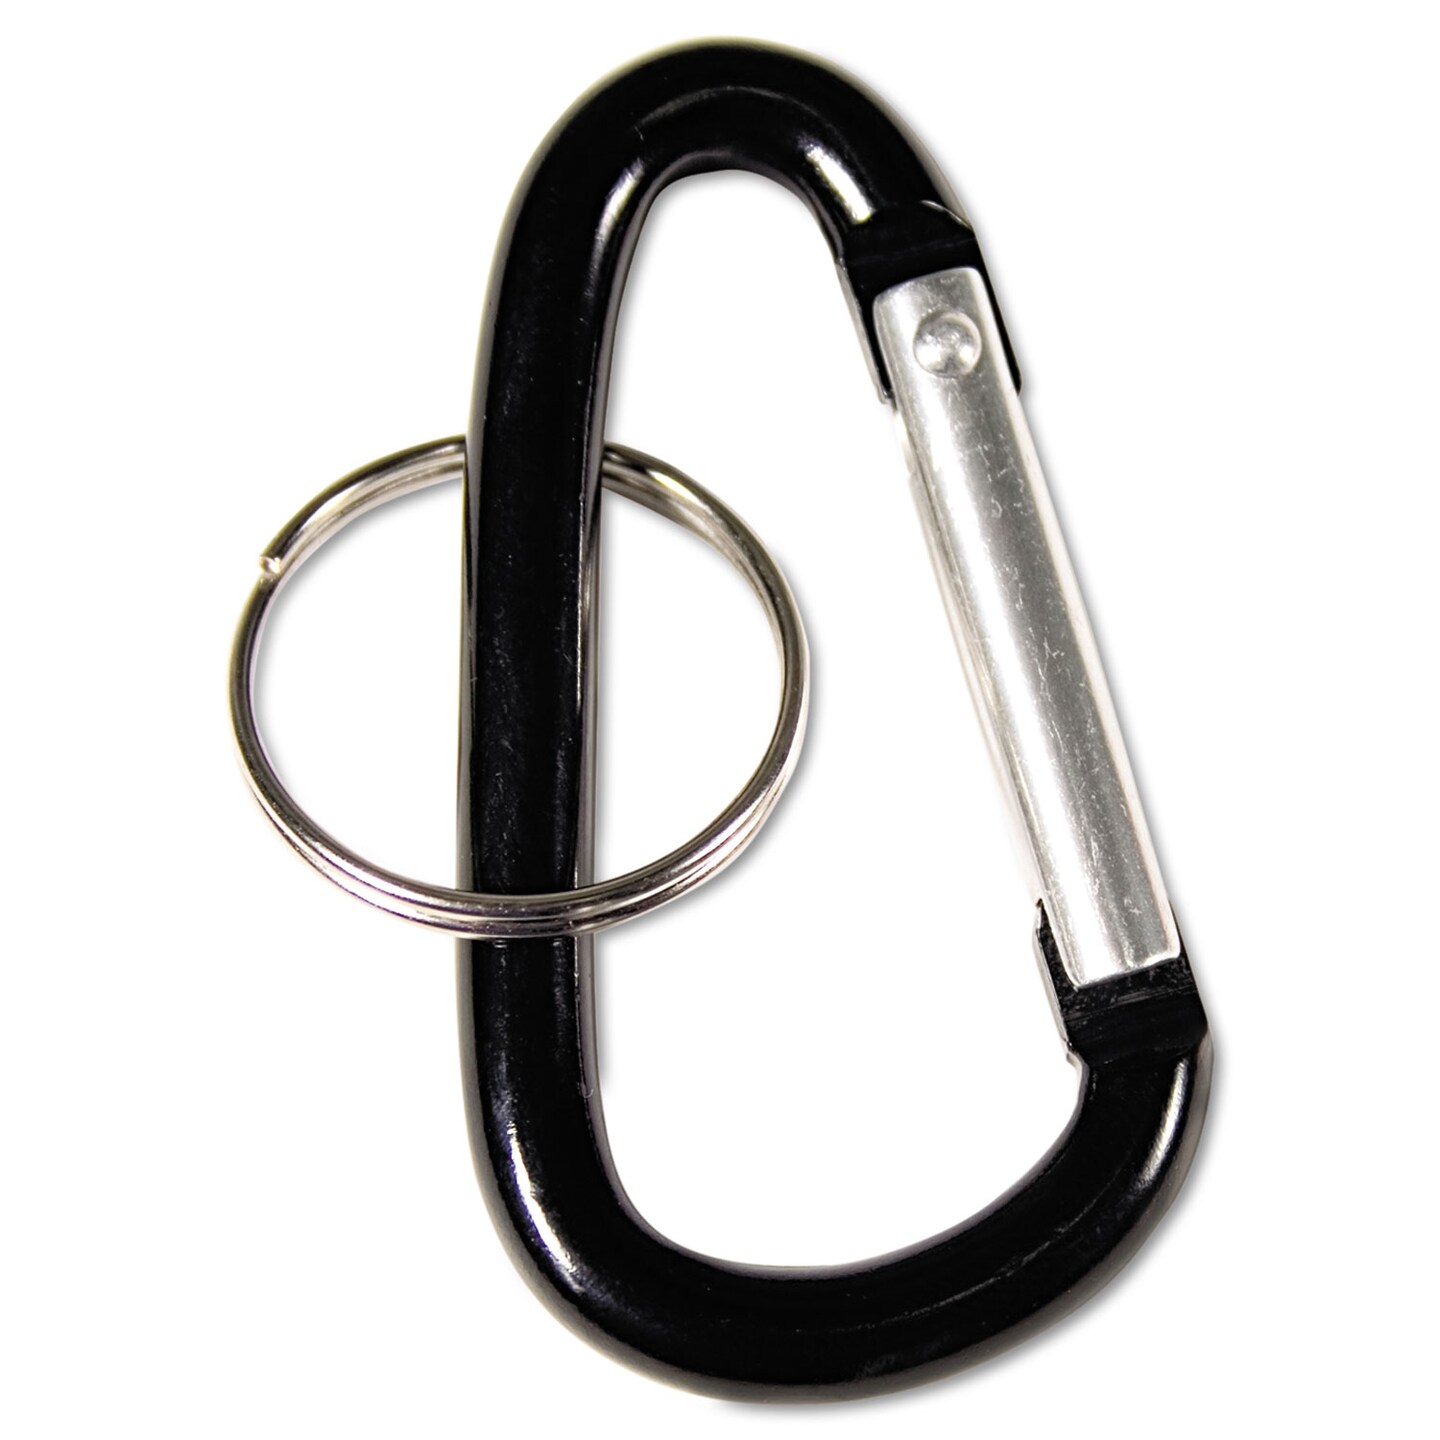 Advantus Carabiner Key Chains Split Key Rings Aluminum Black 10 Pack